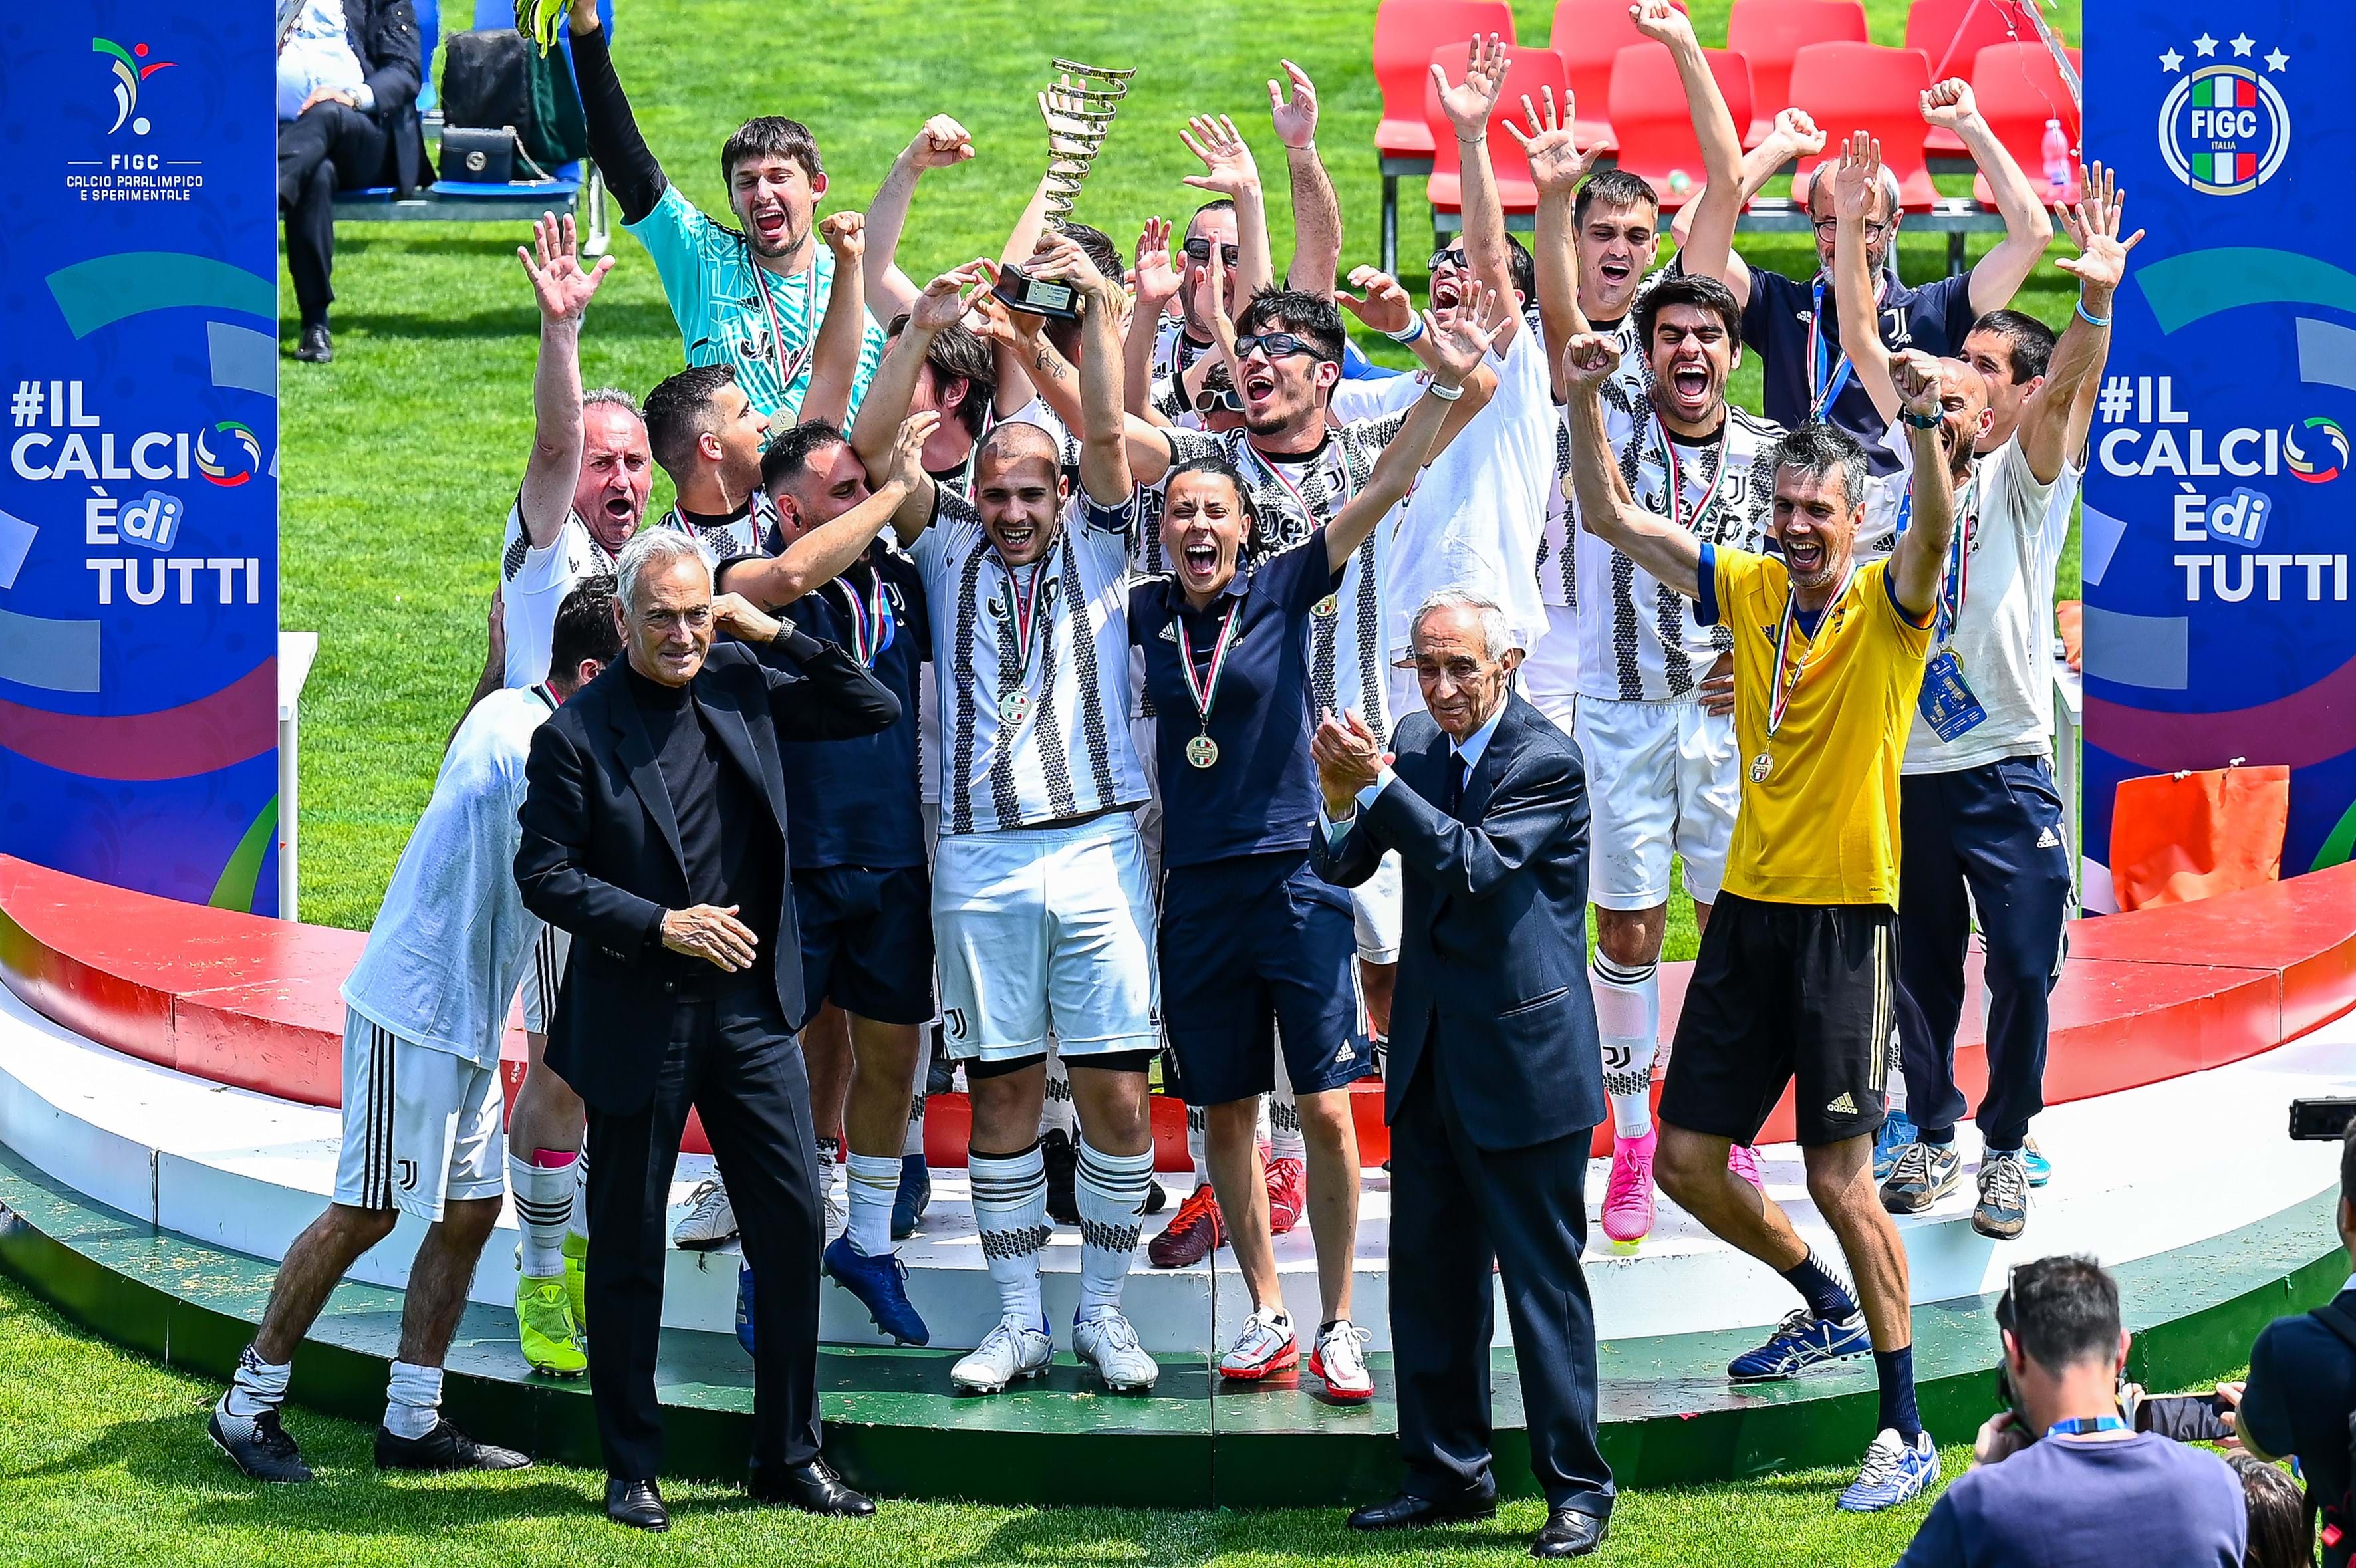 Miegge, presidente della Juventus Nessunoescluso, tra le protagoniste della Finale: "Esperienza fantastica, il coronamento di un anno di lavoro"